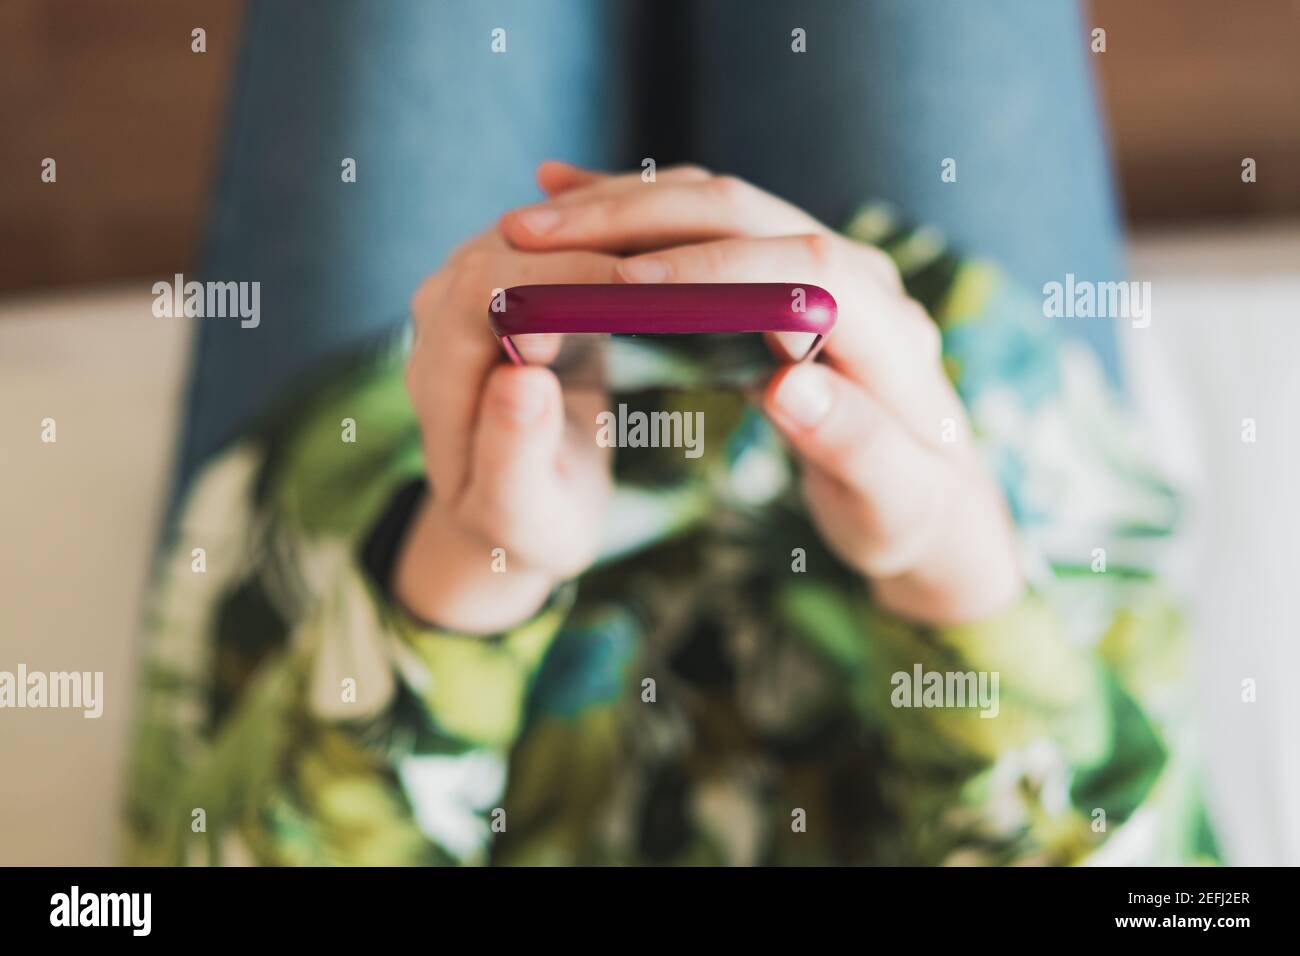 Mobiltelefon in den Händen der Frau, von oben mit dünner Schärfentiefe aufgenommen. Weibliche Person, die ein Smartphone in den Händen hält Stockfoto